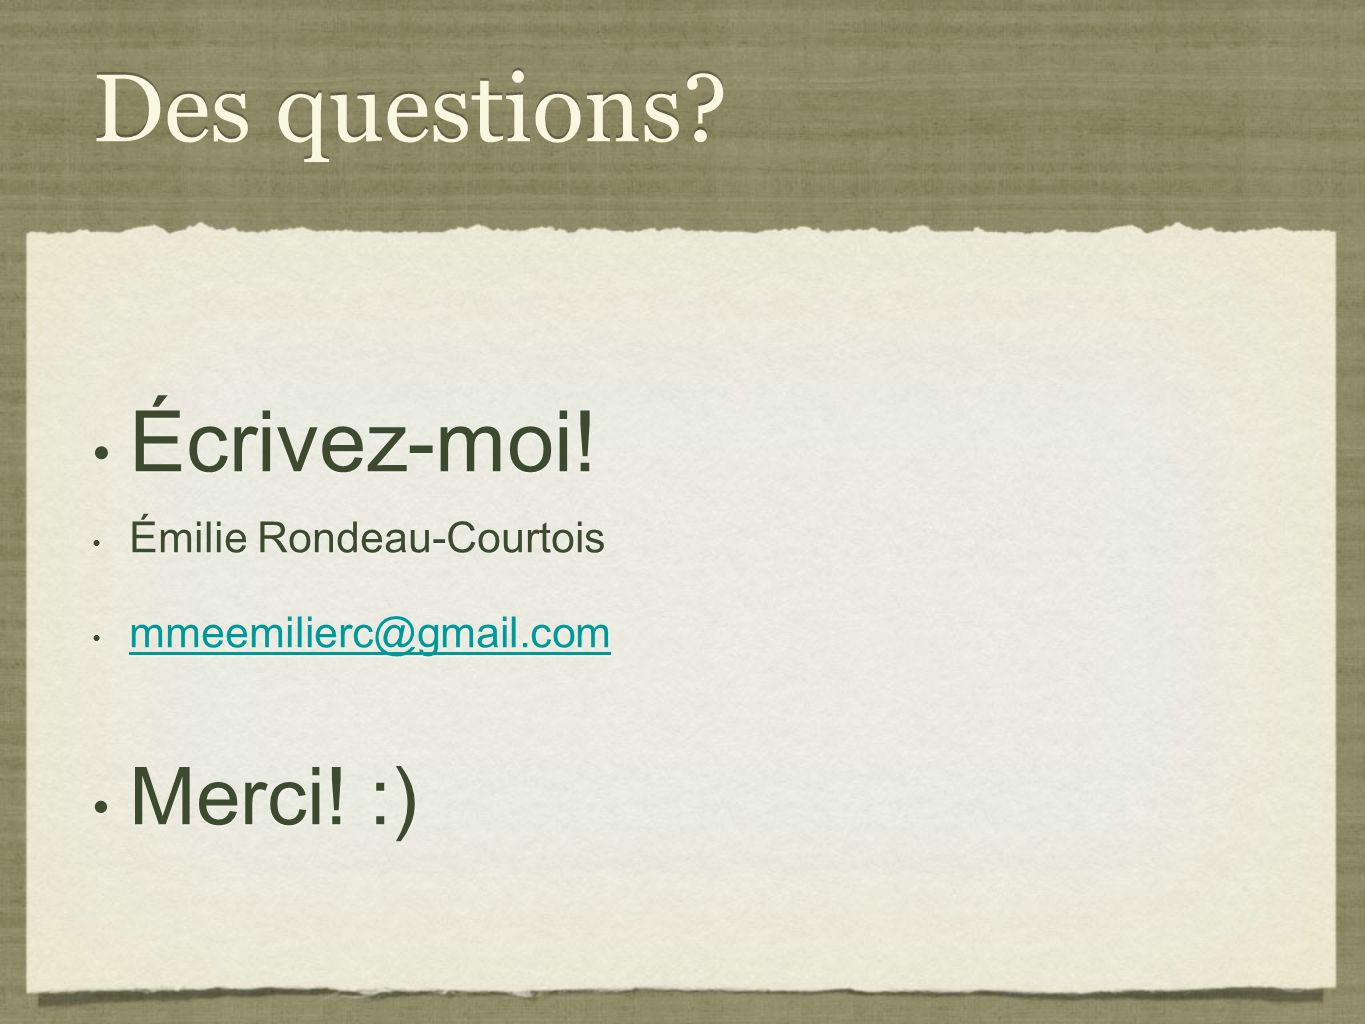 Des questions Écrivez-moi! Merci! :) Émilie Rondeau-Courtois